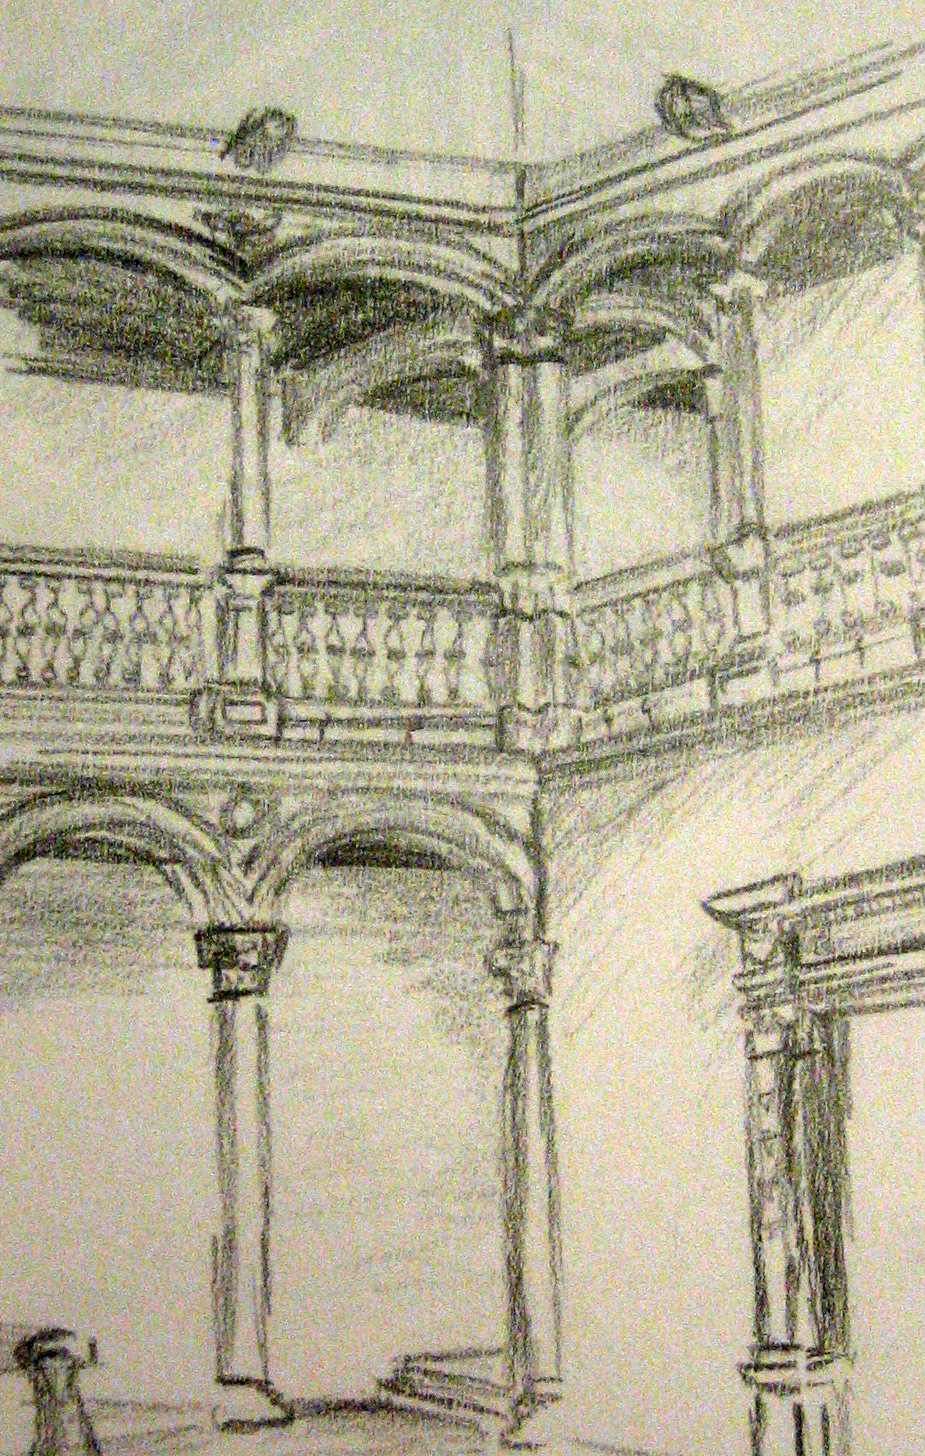 rendering sketch church museum stairs